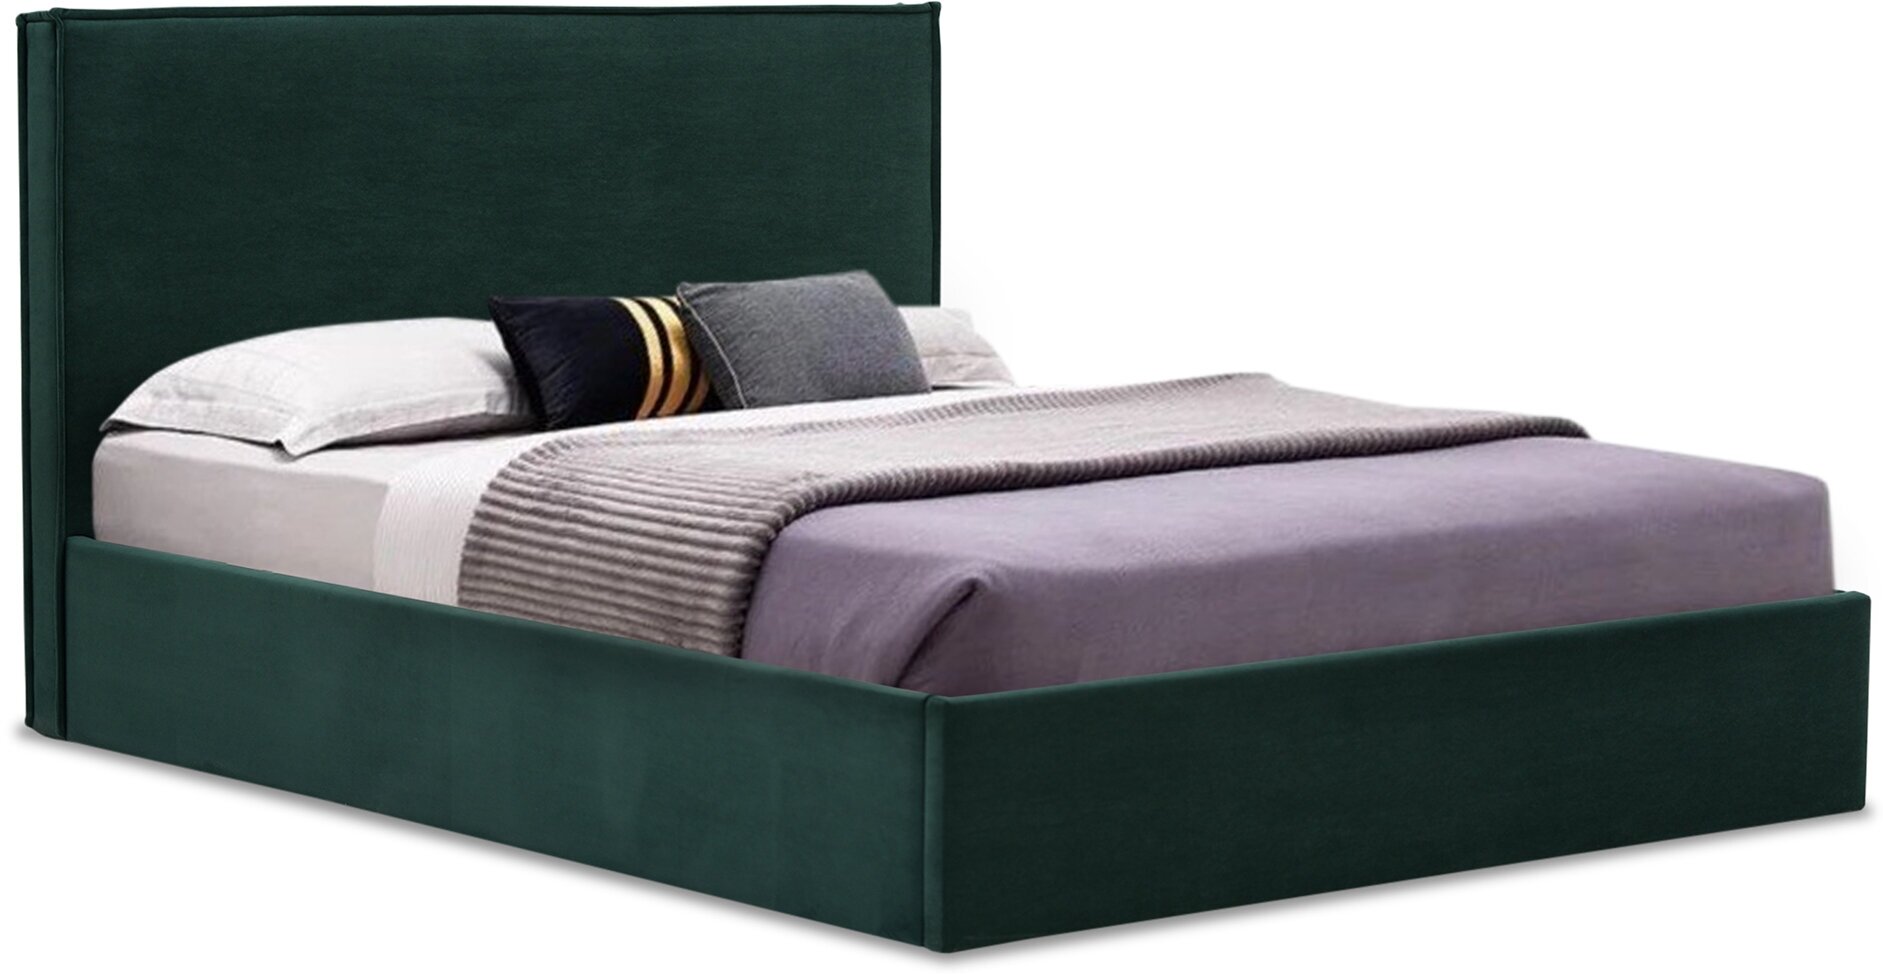 Двуспальная кровать Лутон 160х200, с подъемным механизмом, Ultra forest